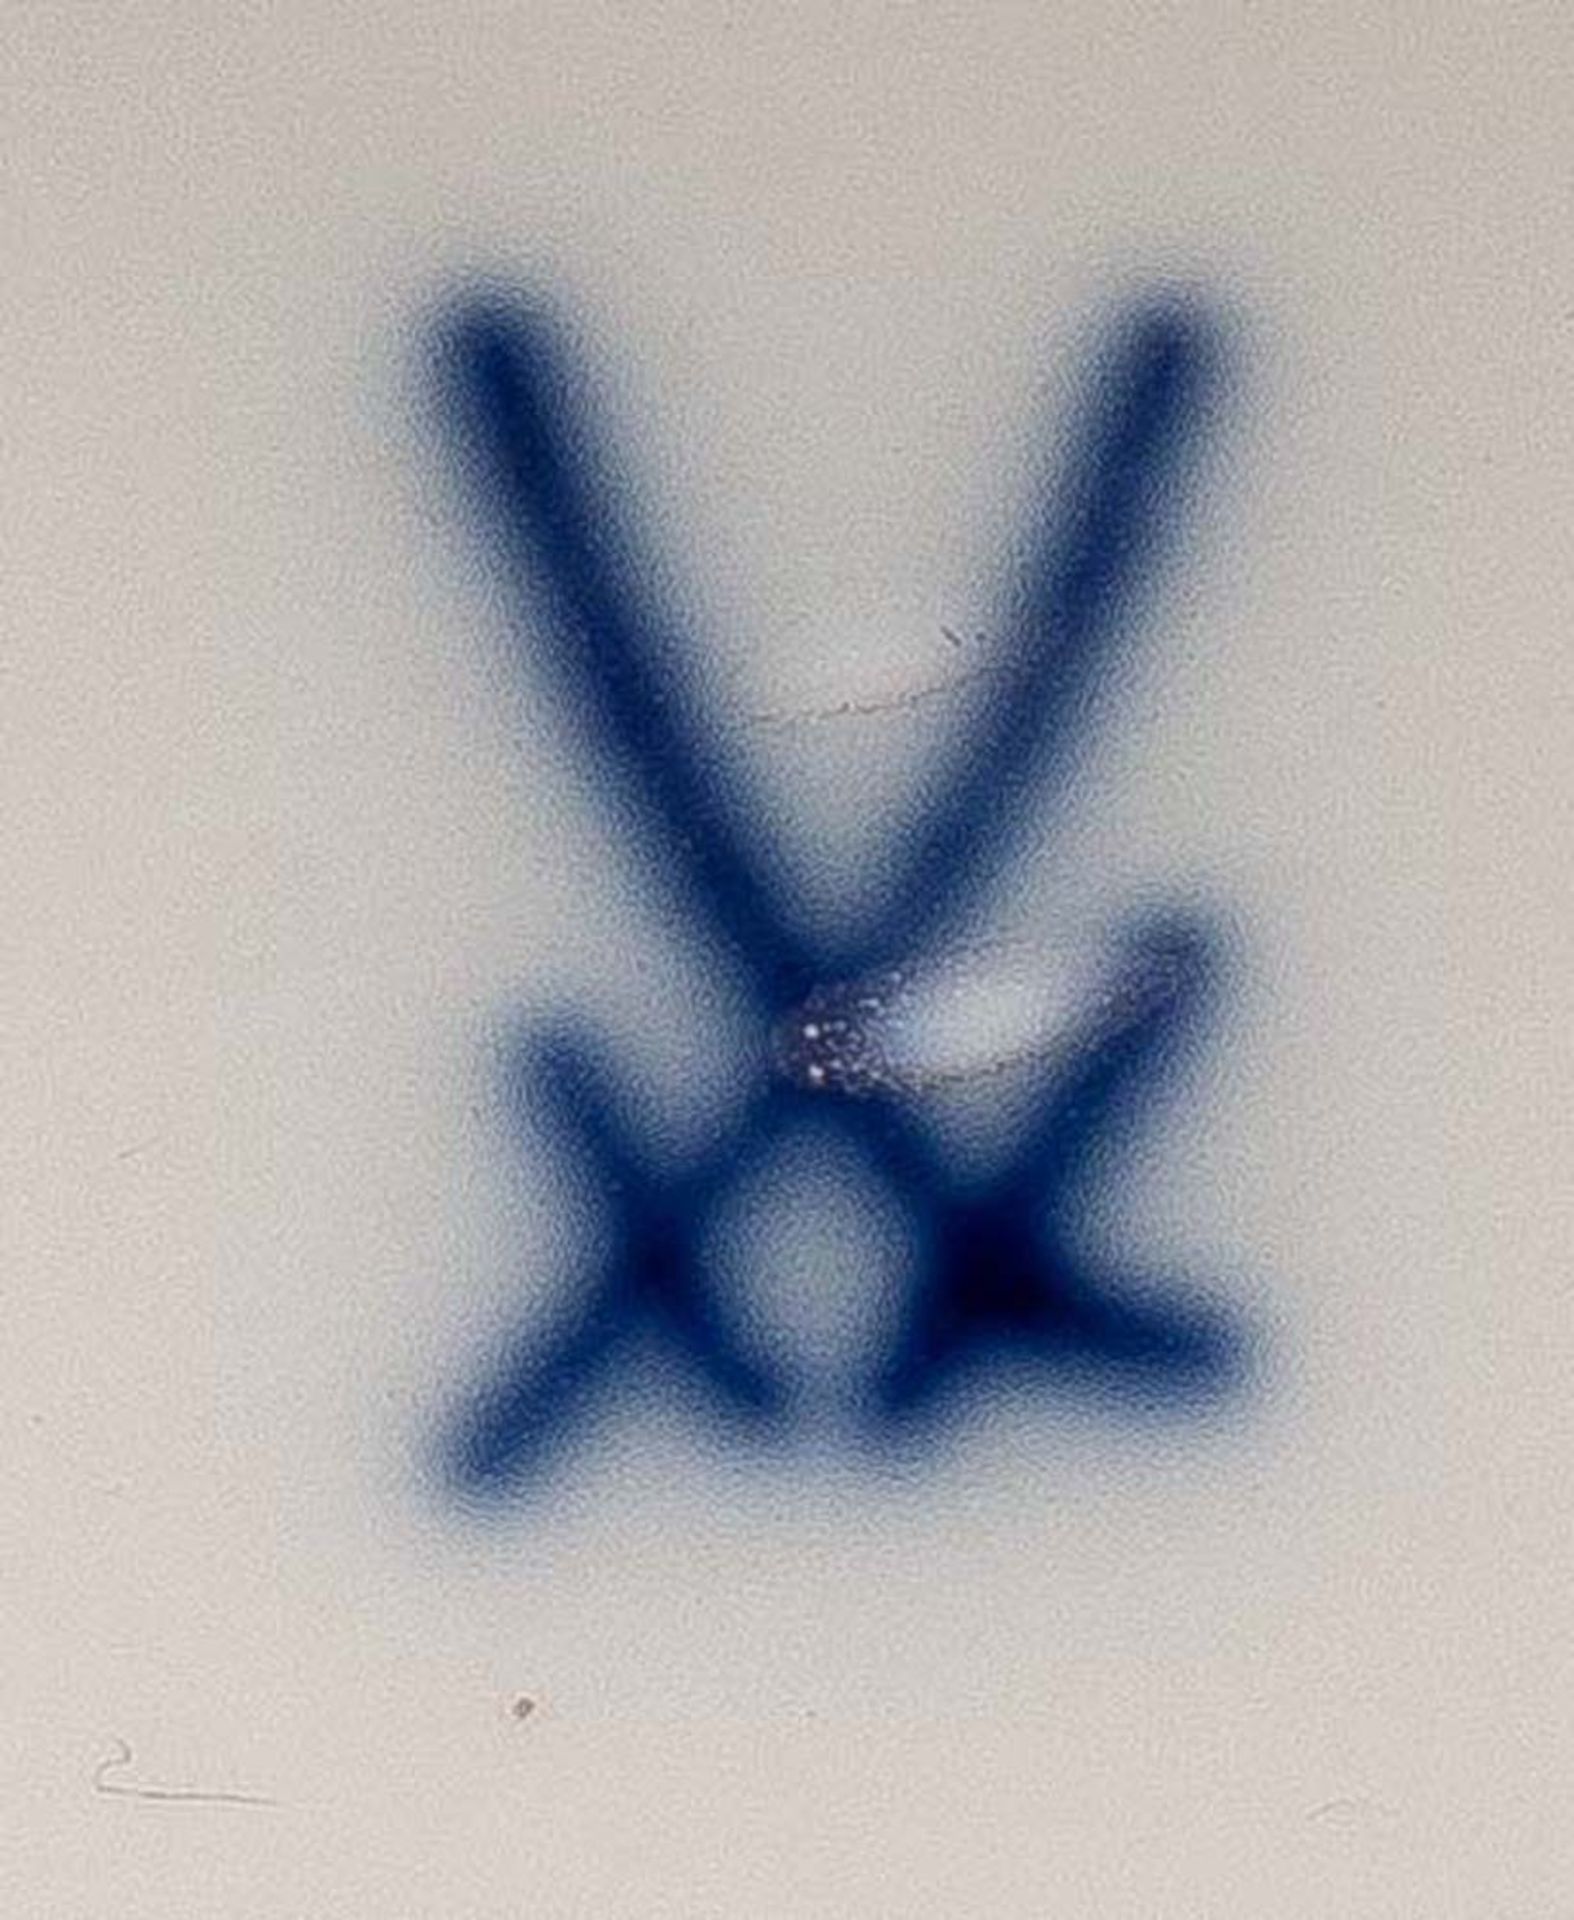 Prunkvase. Meissen 19. Jh. Porzellan, kobaltblau bemalt, mit Blumendekor, gold gehöht, am Boden - Bild 2 aus 2